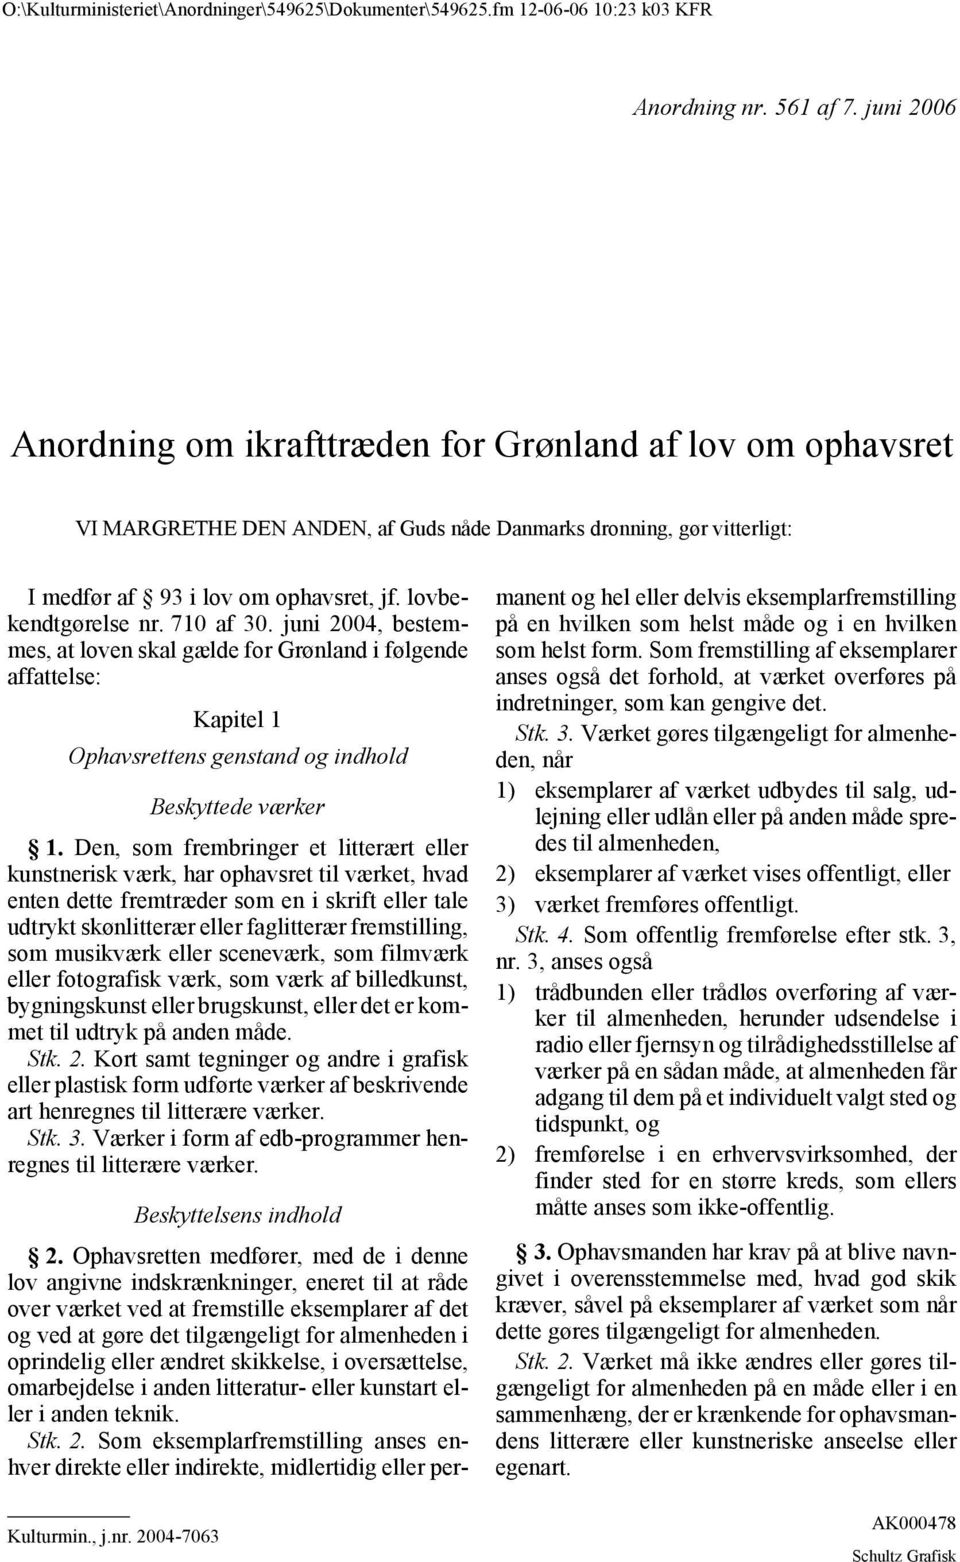 lovbekendtgørelse nr. 710 af 30. juni 2004, bestemmes, at loven skal gælde for Grønland i følgende affattelse: Kapitel 1 Ophavsrettens genstand og indhold Beskyttede værker 1.